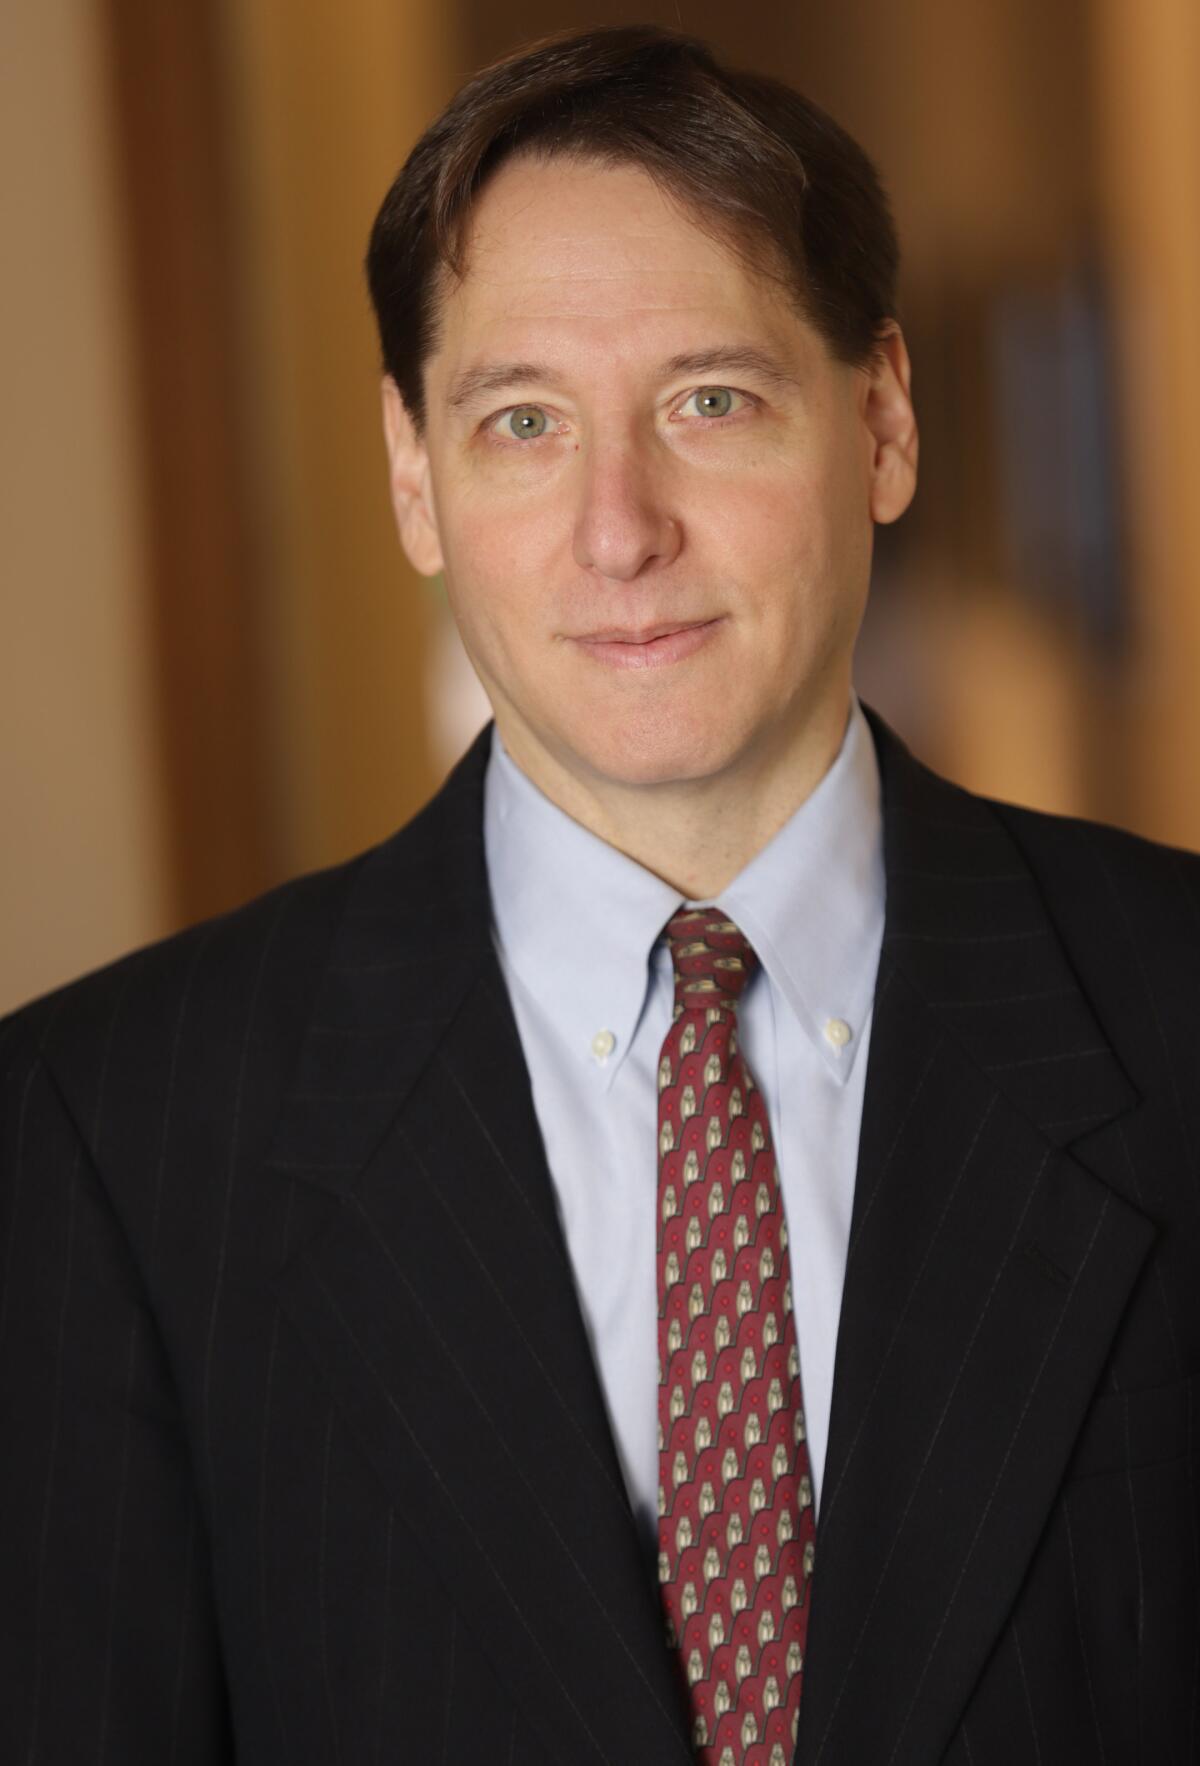 Jonathan Karp, President and CEO of Simon & Schuster, Inc.